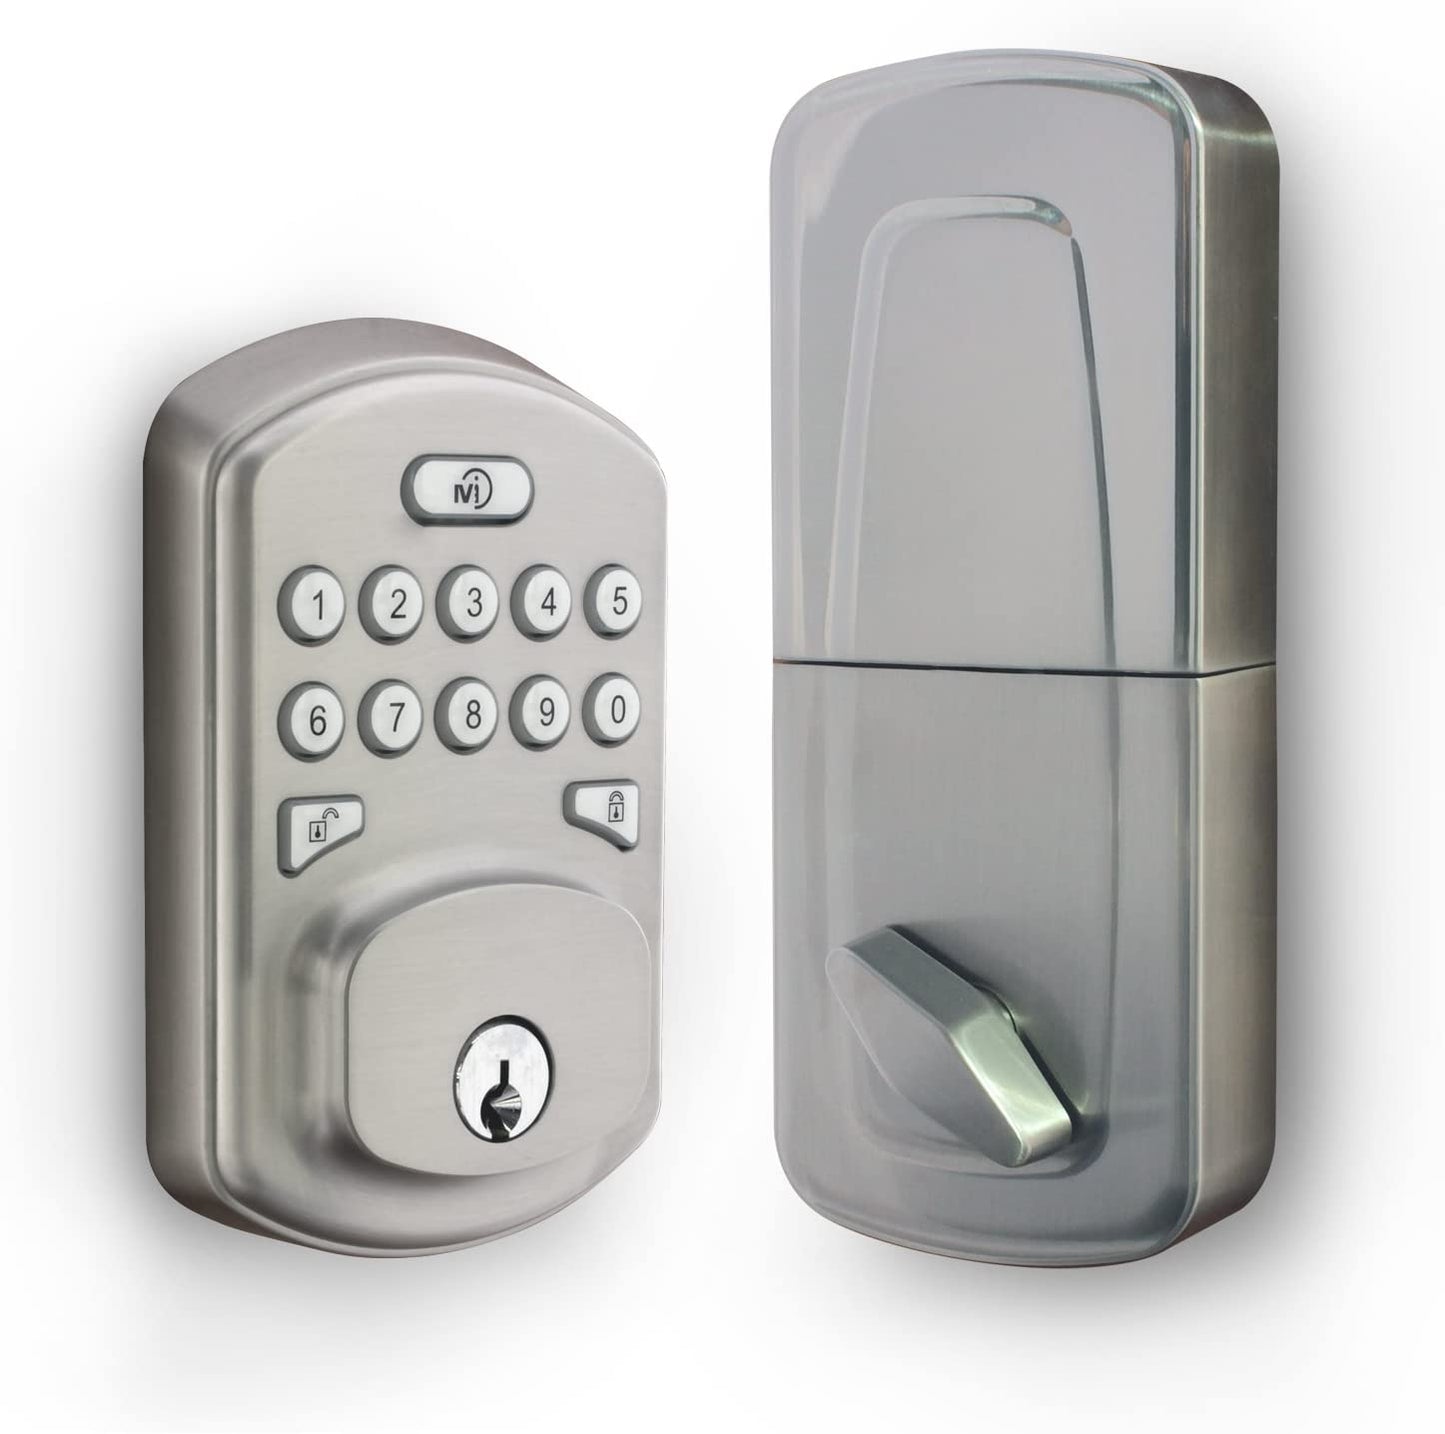 Smart Hub - Set/Update Door Lock PIN